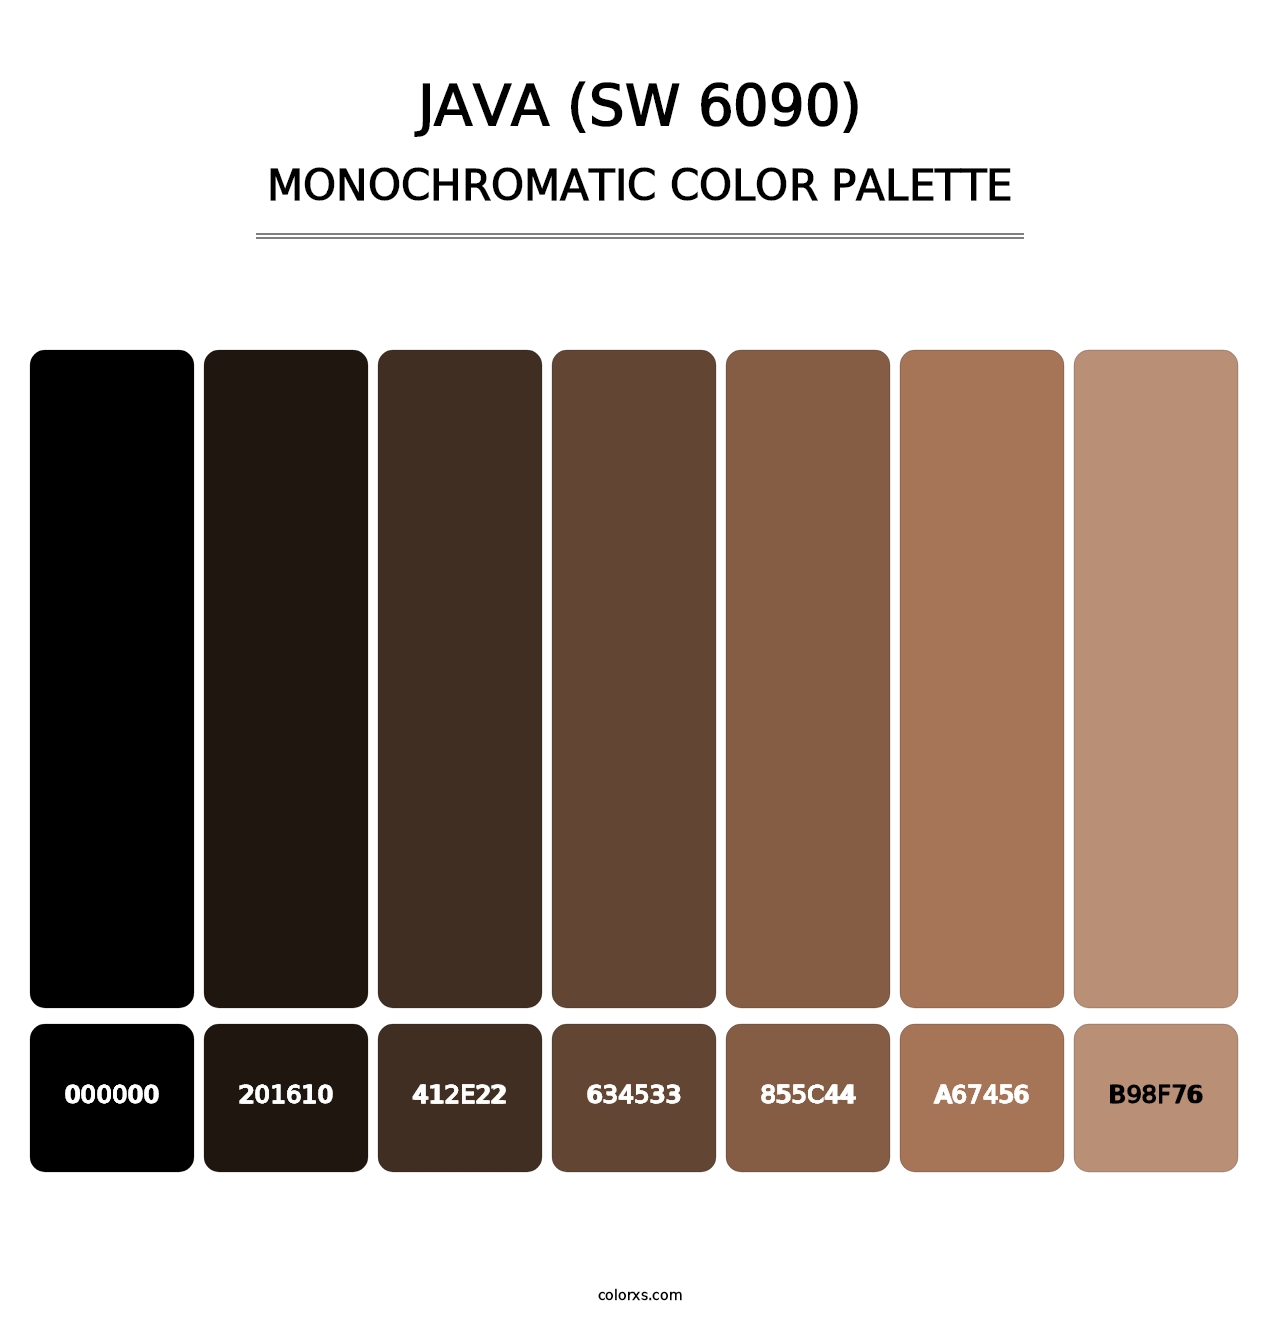 Java (SW 6090) - Monochromatic Color Palette